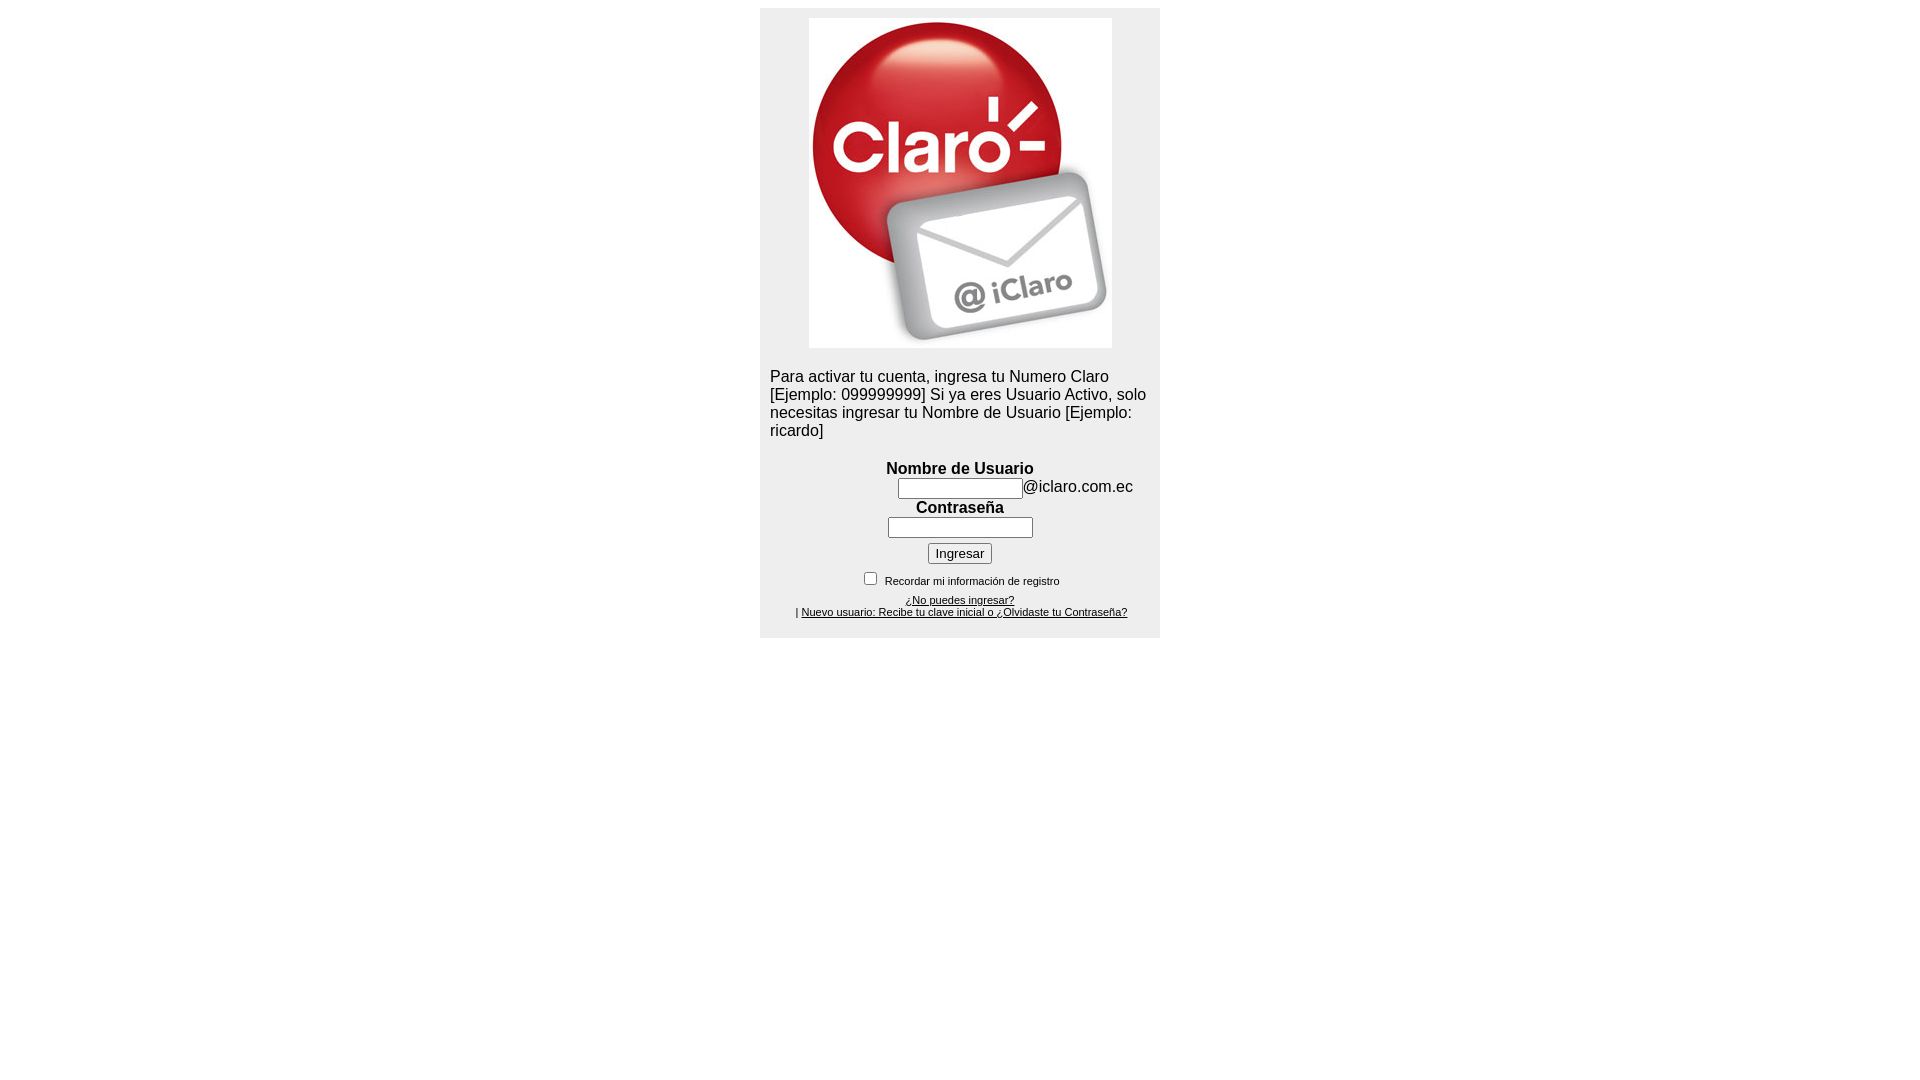 Website status correo.iclaro.com.ec is   ONLINE